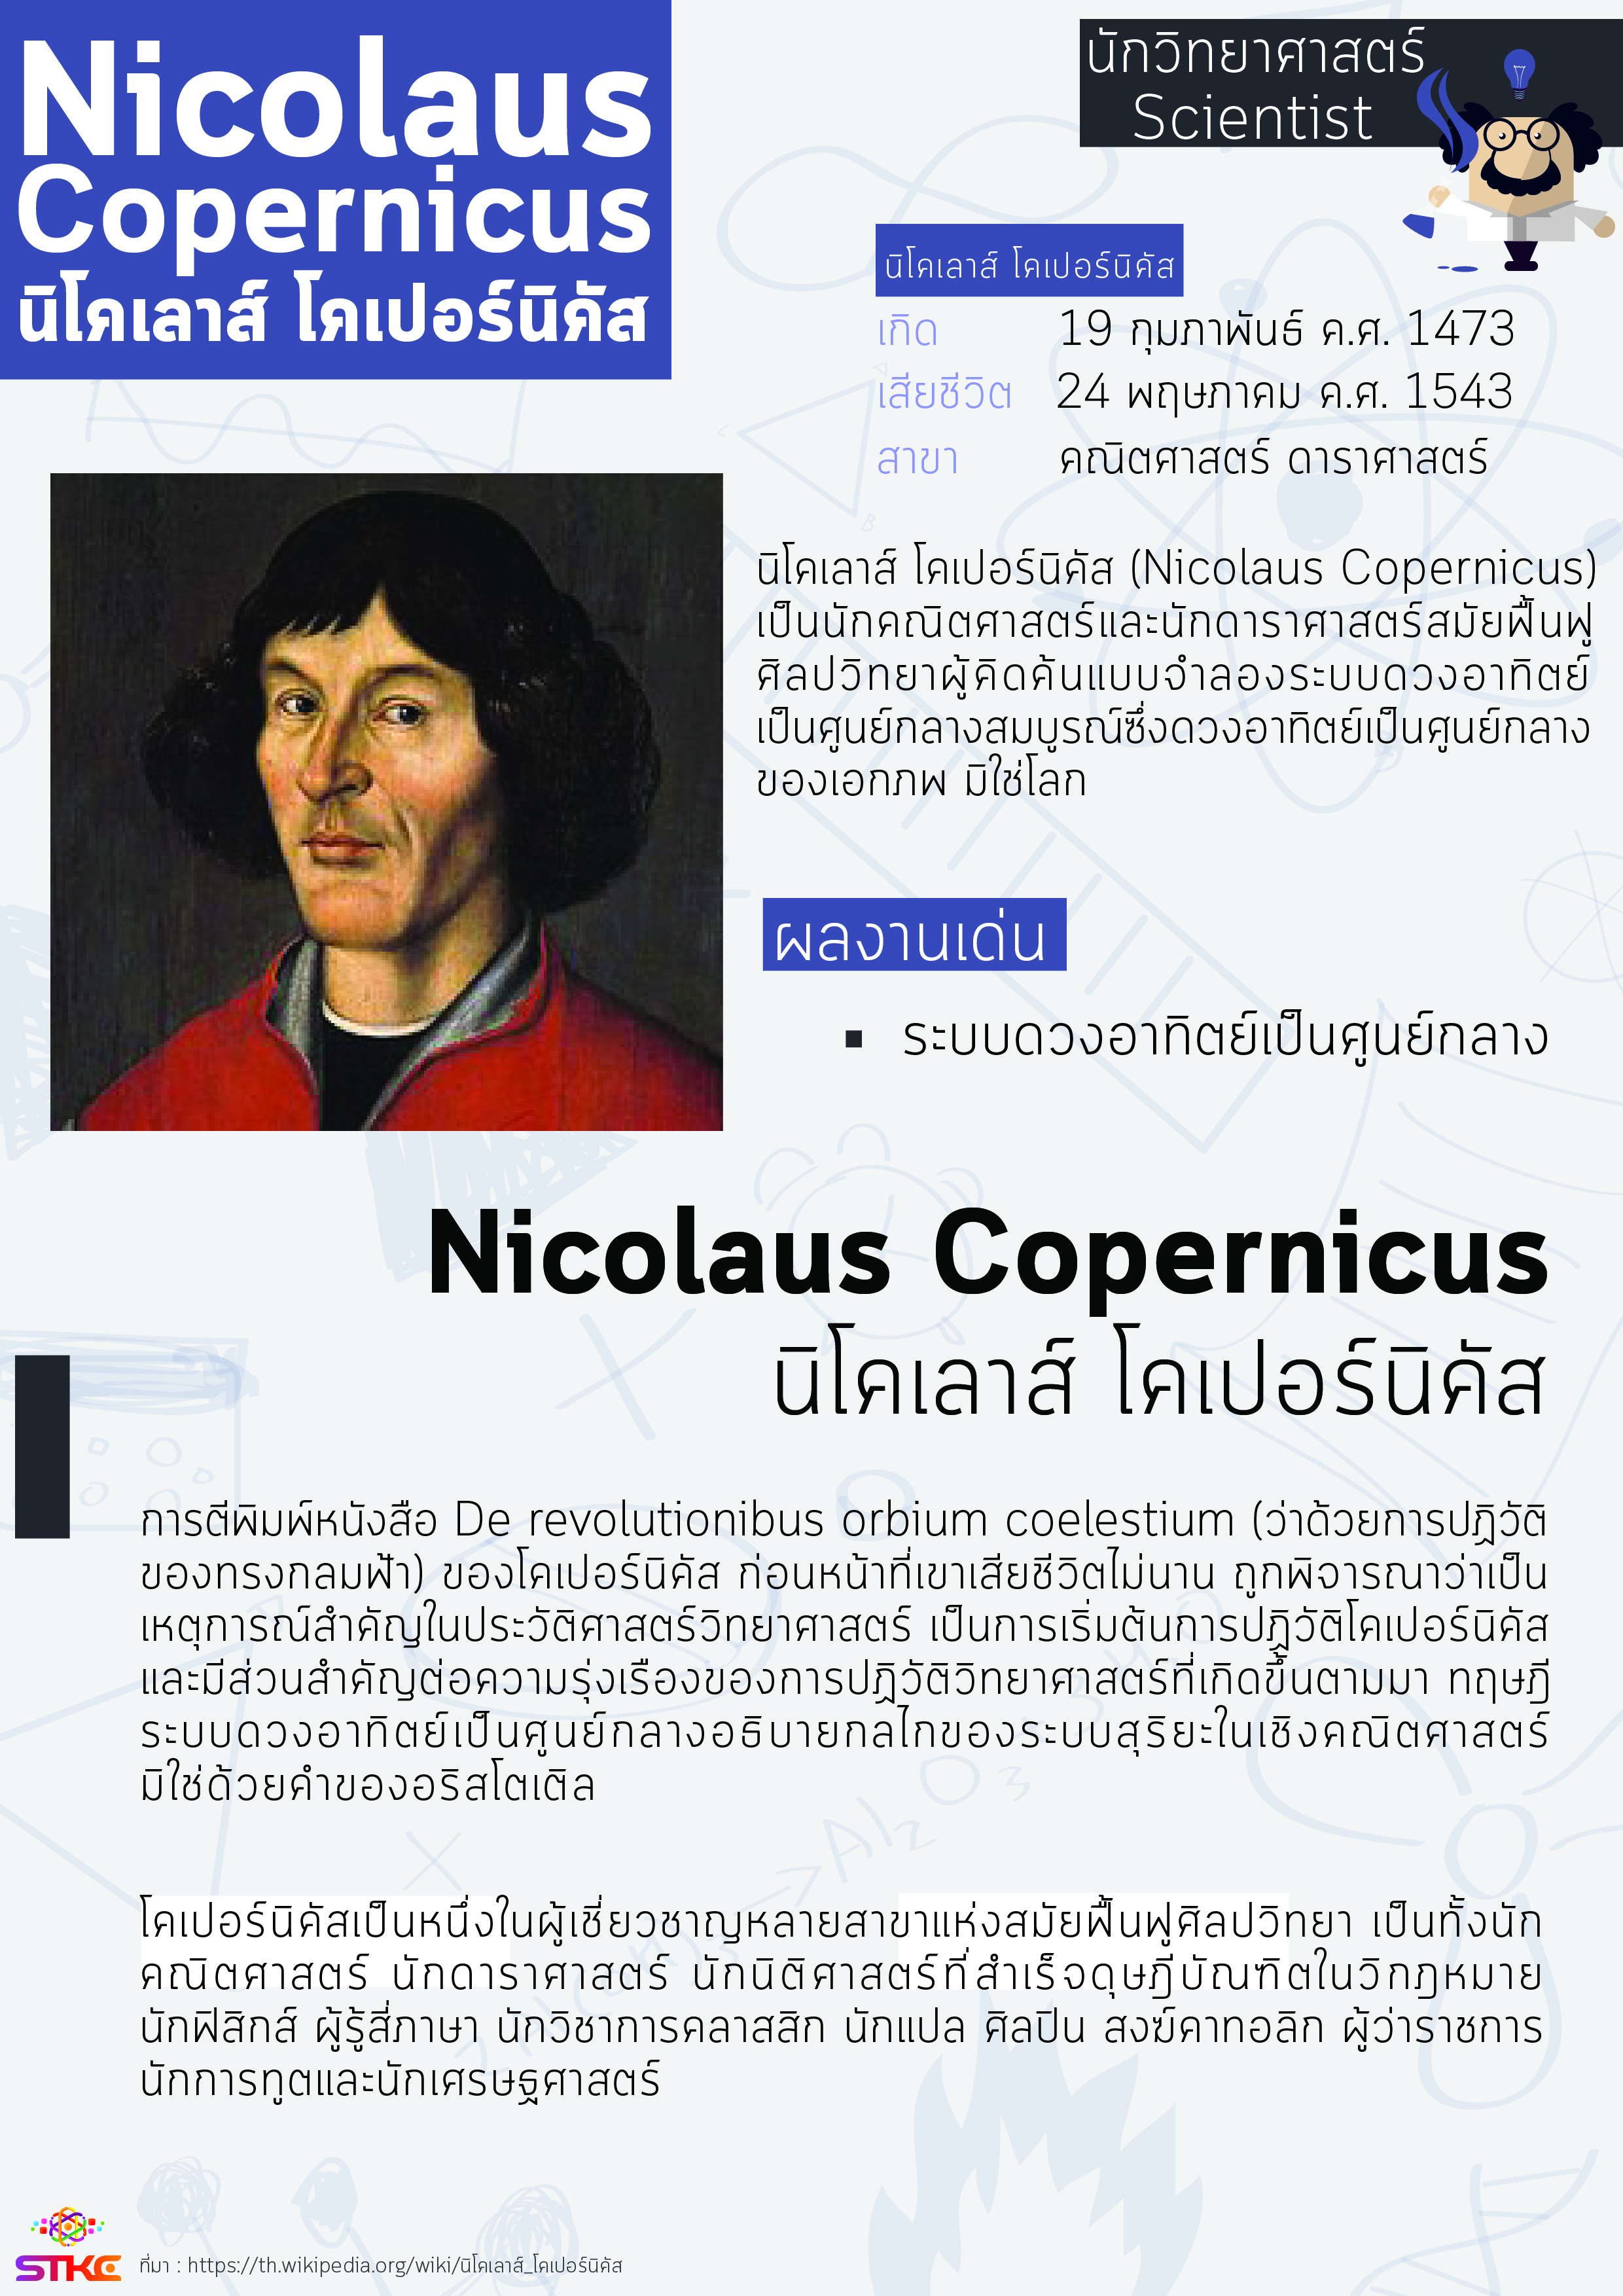 นักวิทยาศาสตร์ นิโคเลาส์ โคเปอร์นิคัส (Nicolaus Copernicus)